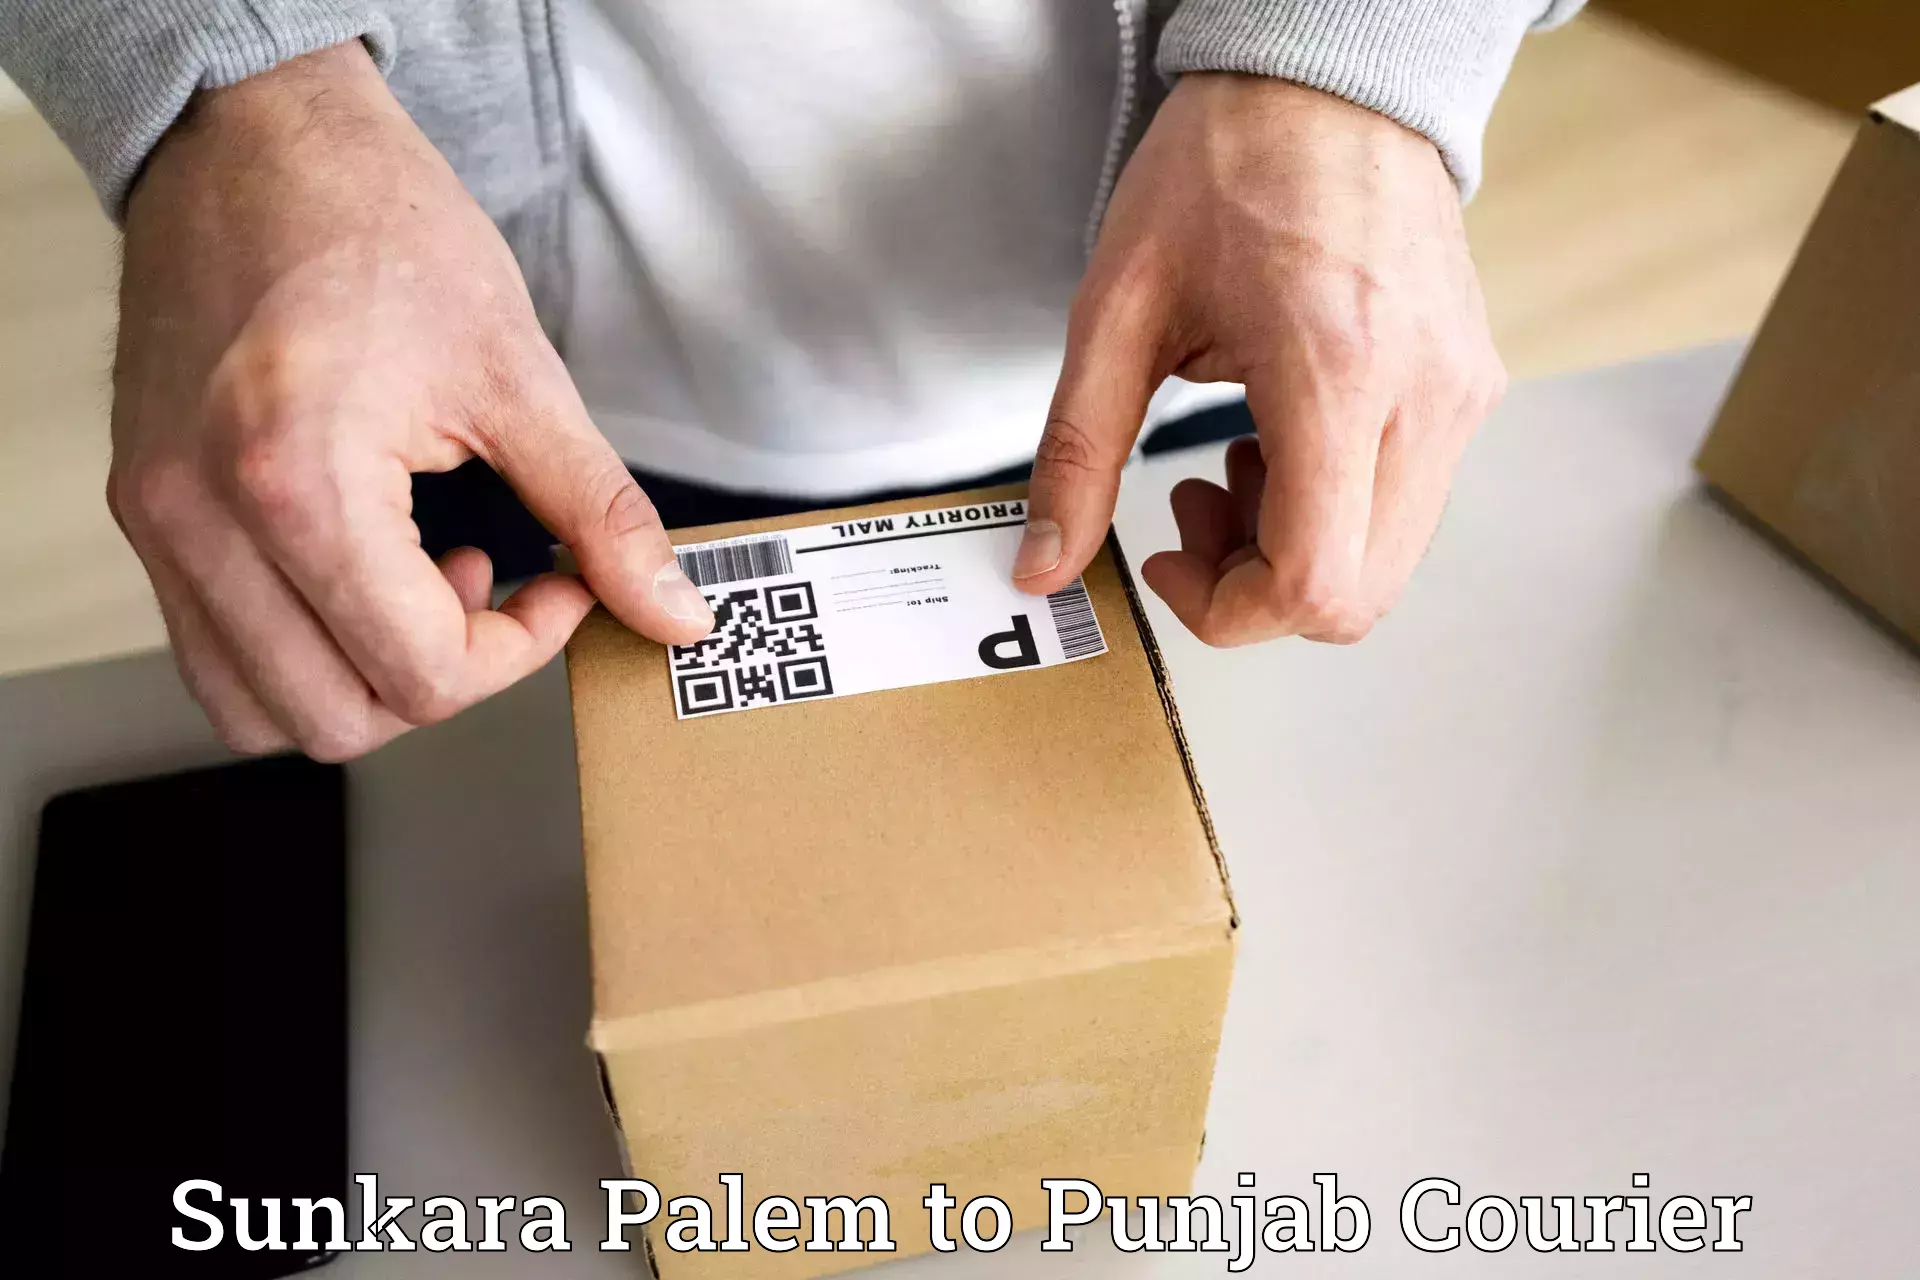 Express courier facilities Sunkara Palem to Punjab